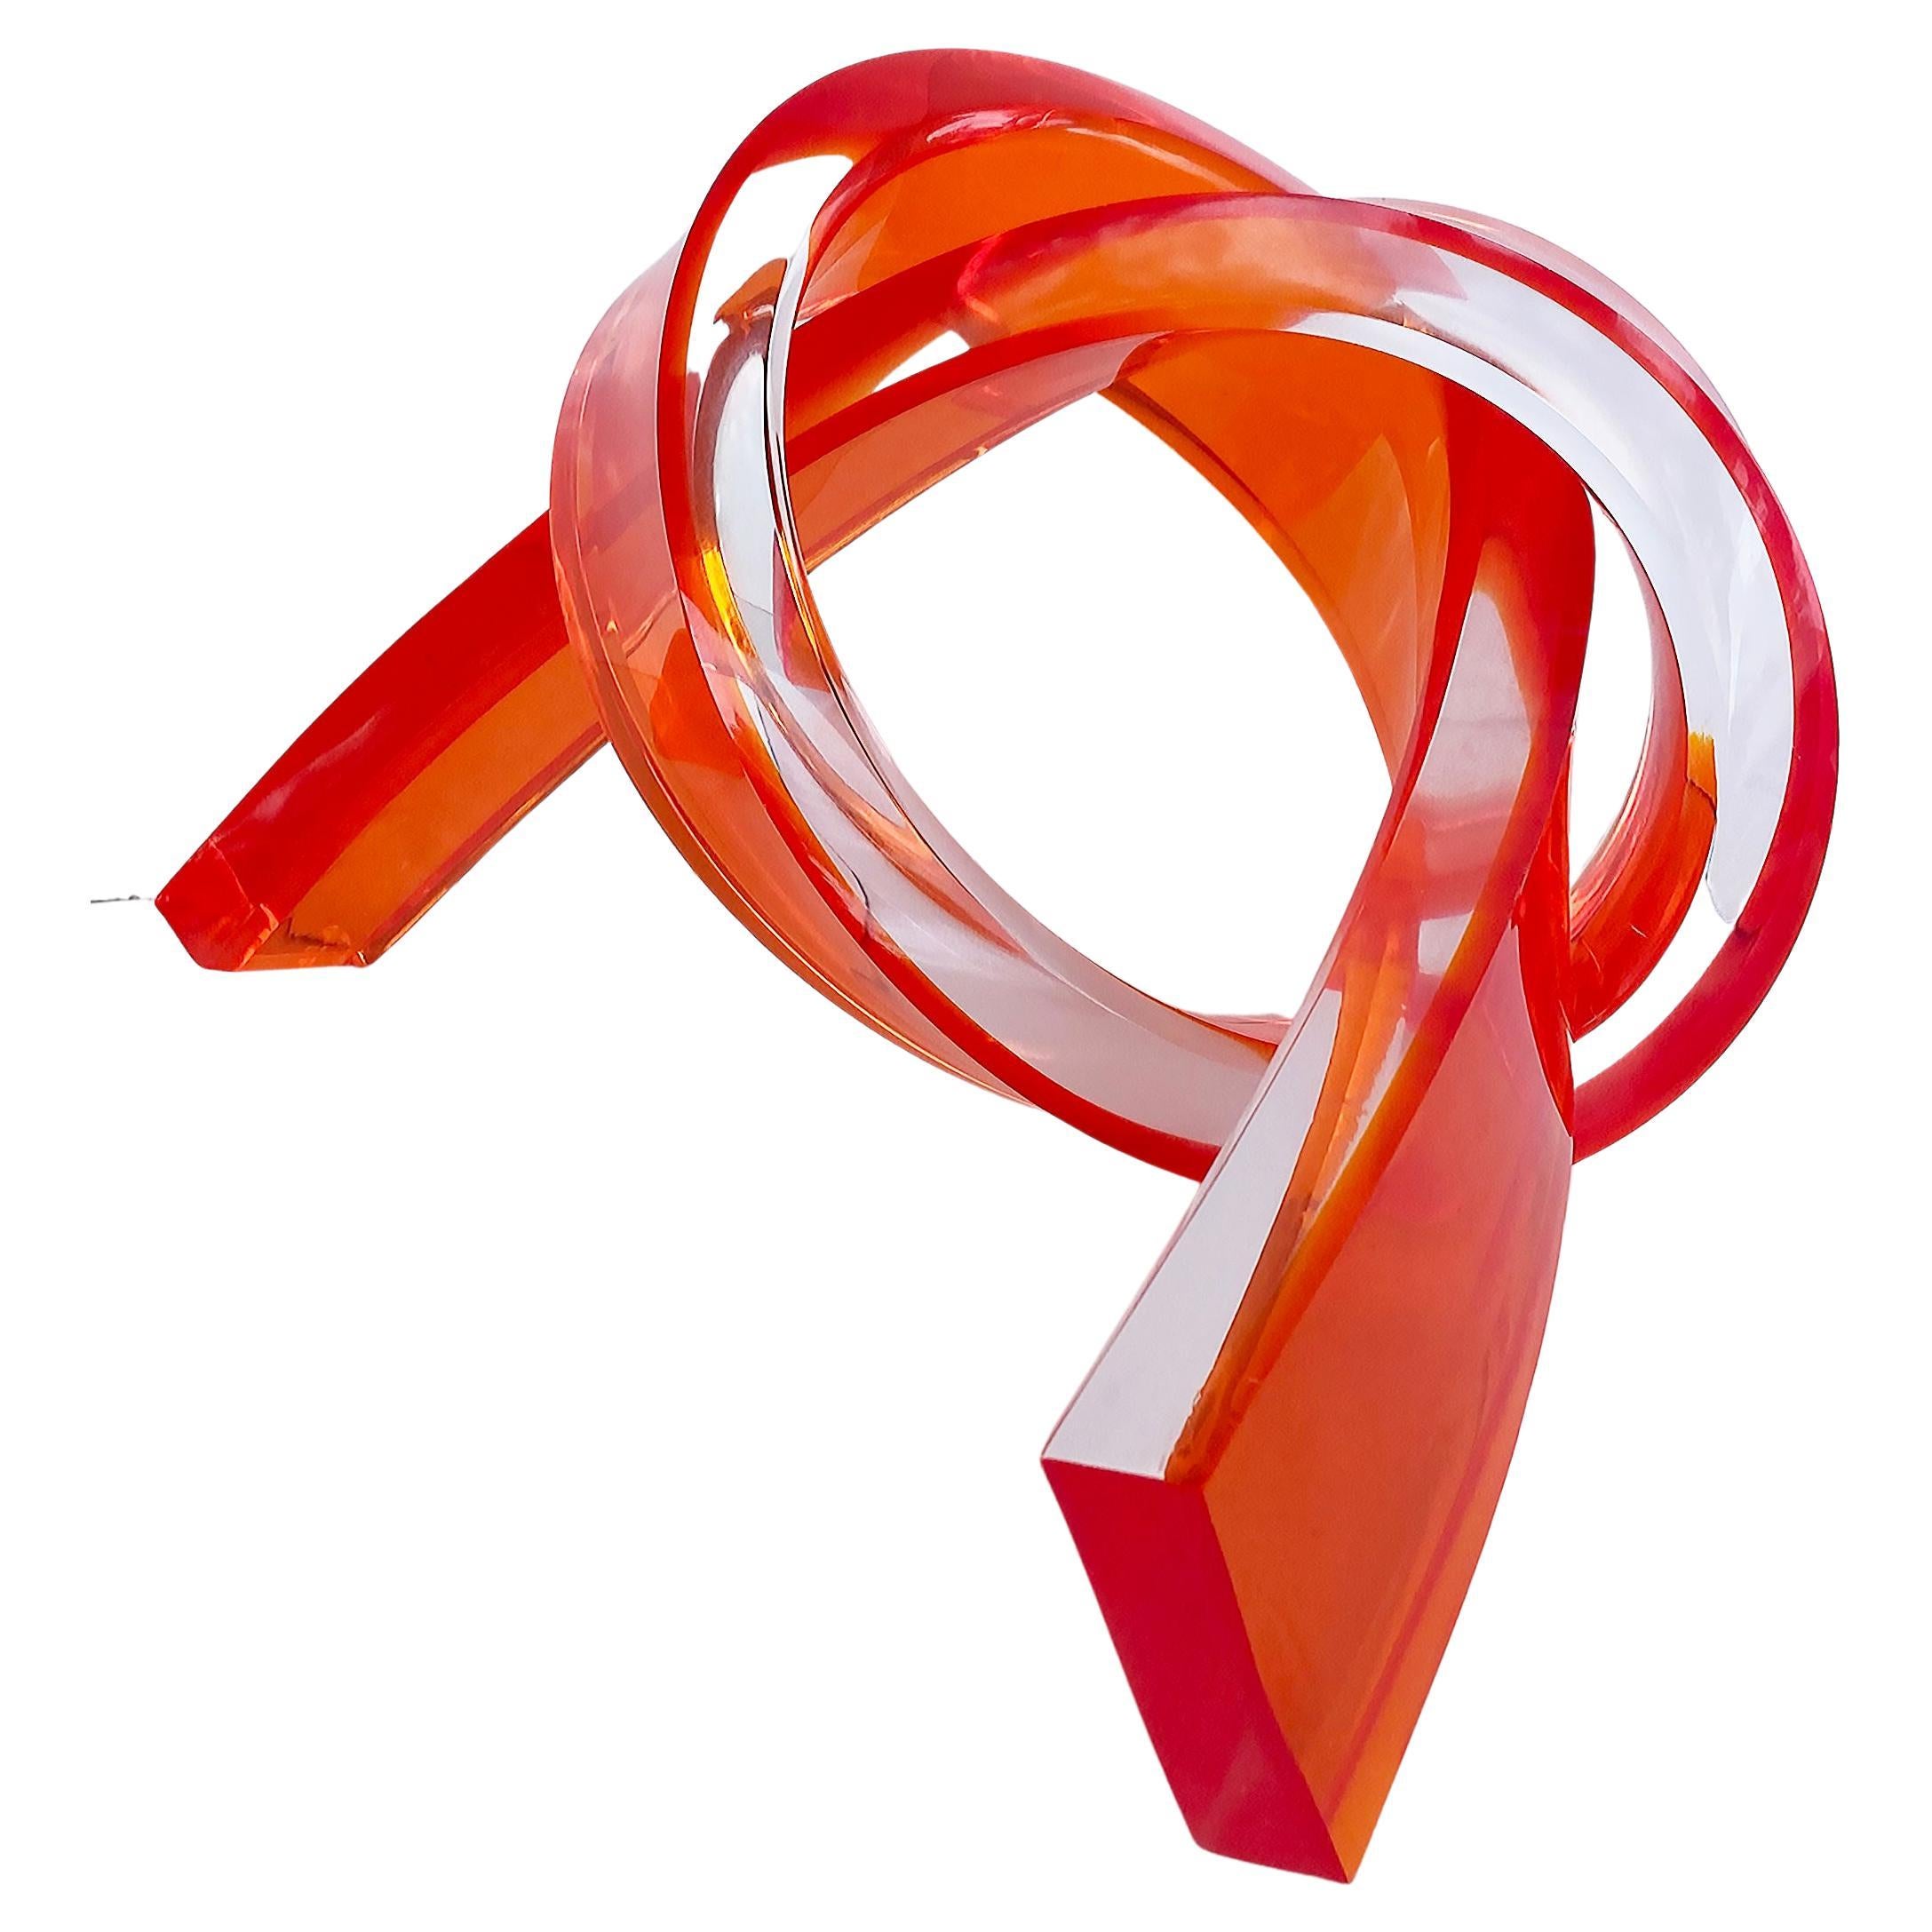 Ikonische gedrehte abstrakte Lucite-Bänder-Skulptur, 2023, orange